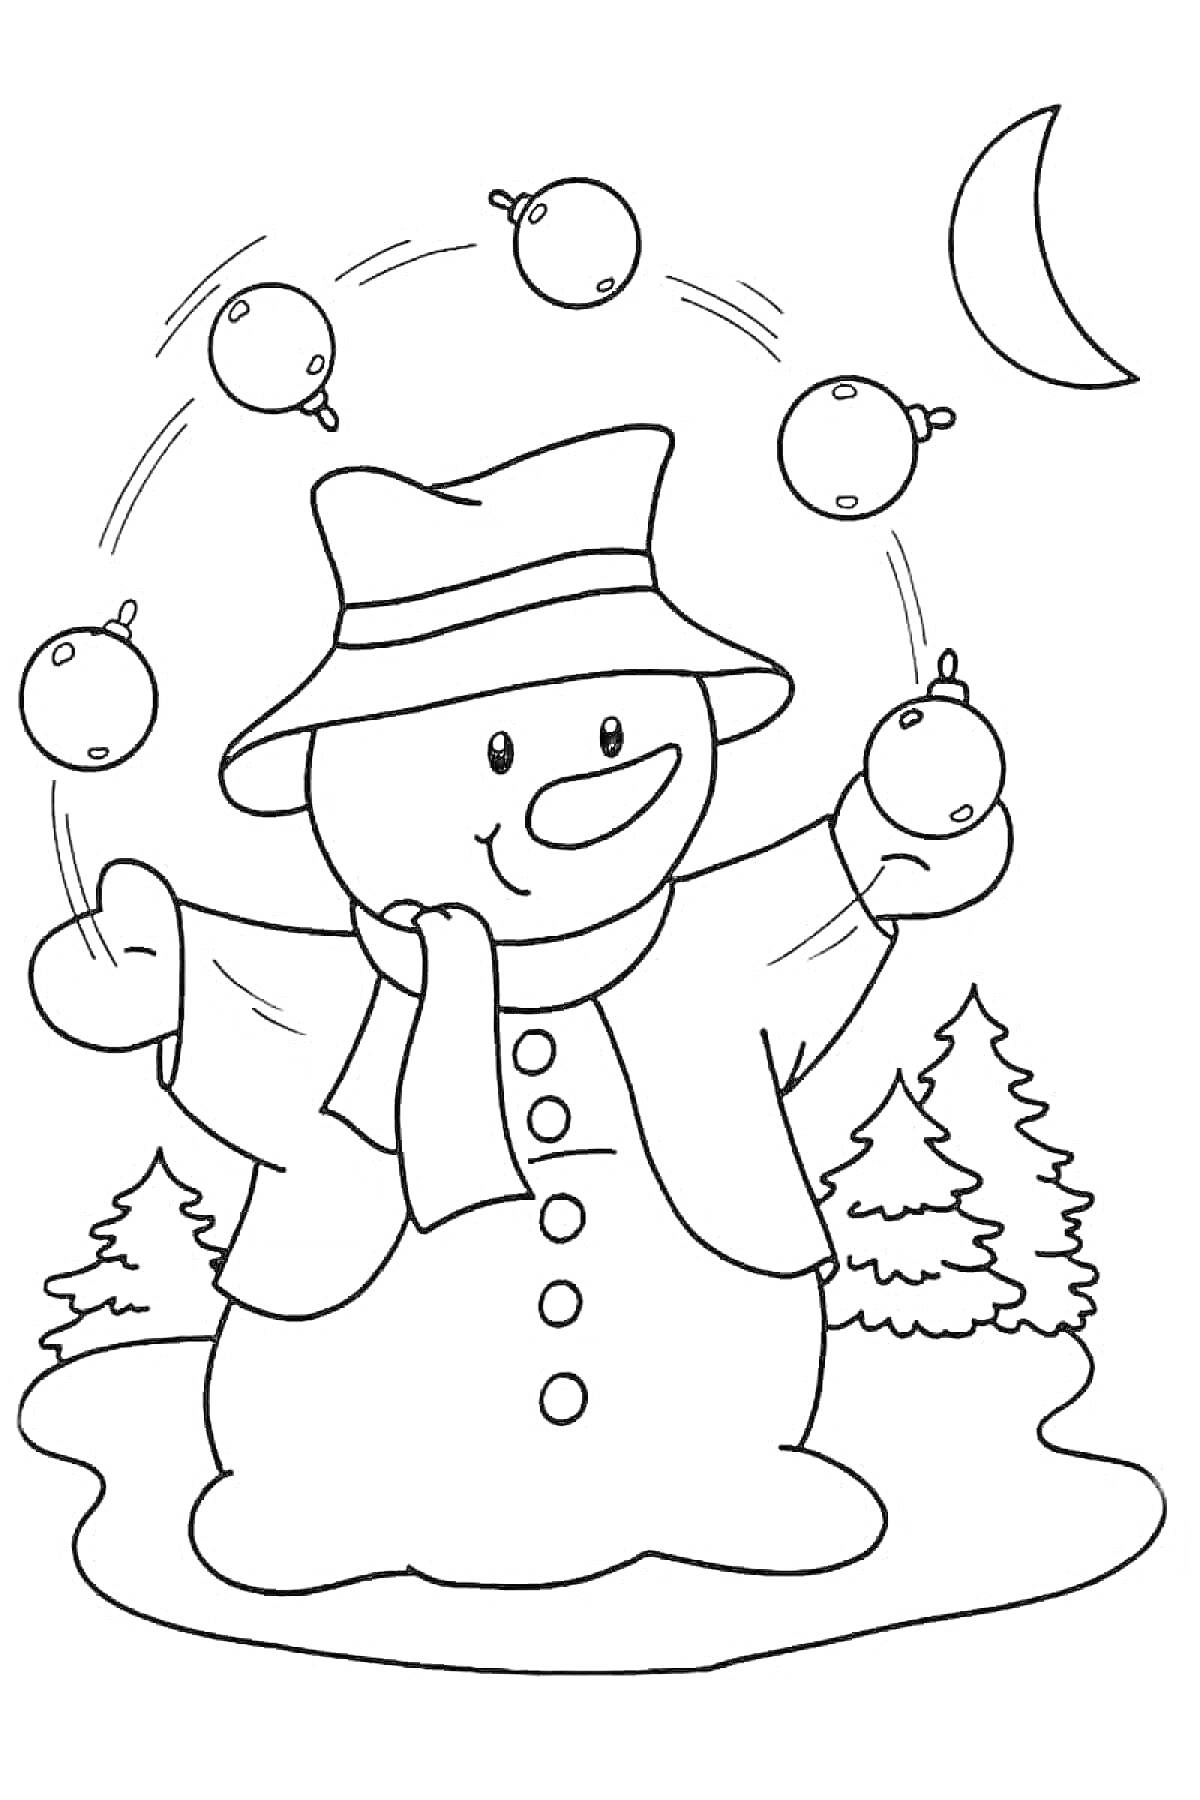 Раскраска Снеговик, жонглирующий шарами рядом с елью и луной